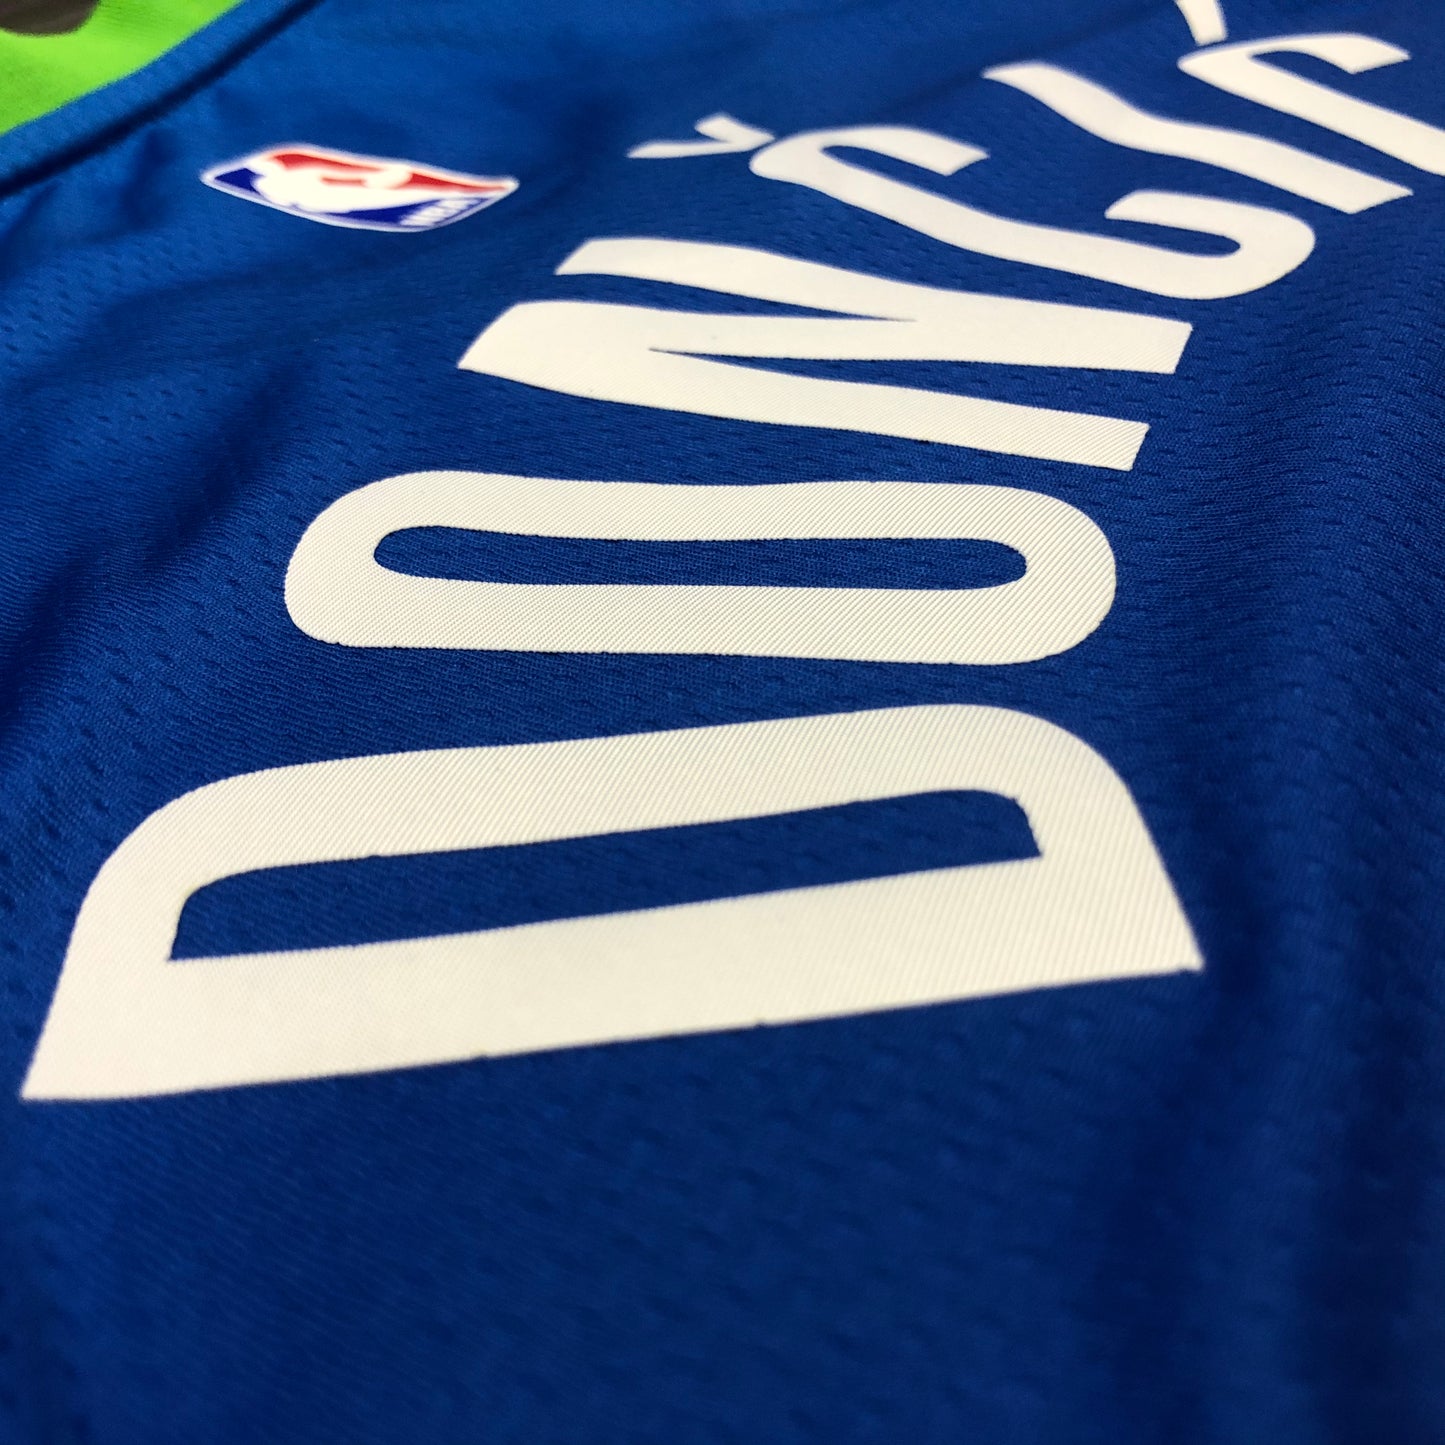 Dallas Mavericks Luka Dončić 2019/20 NBA Swingman Jersey - Nike City Edition